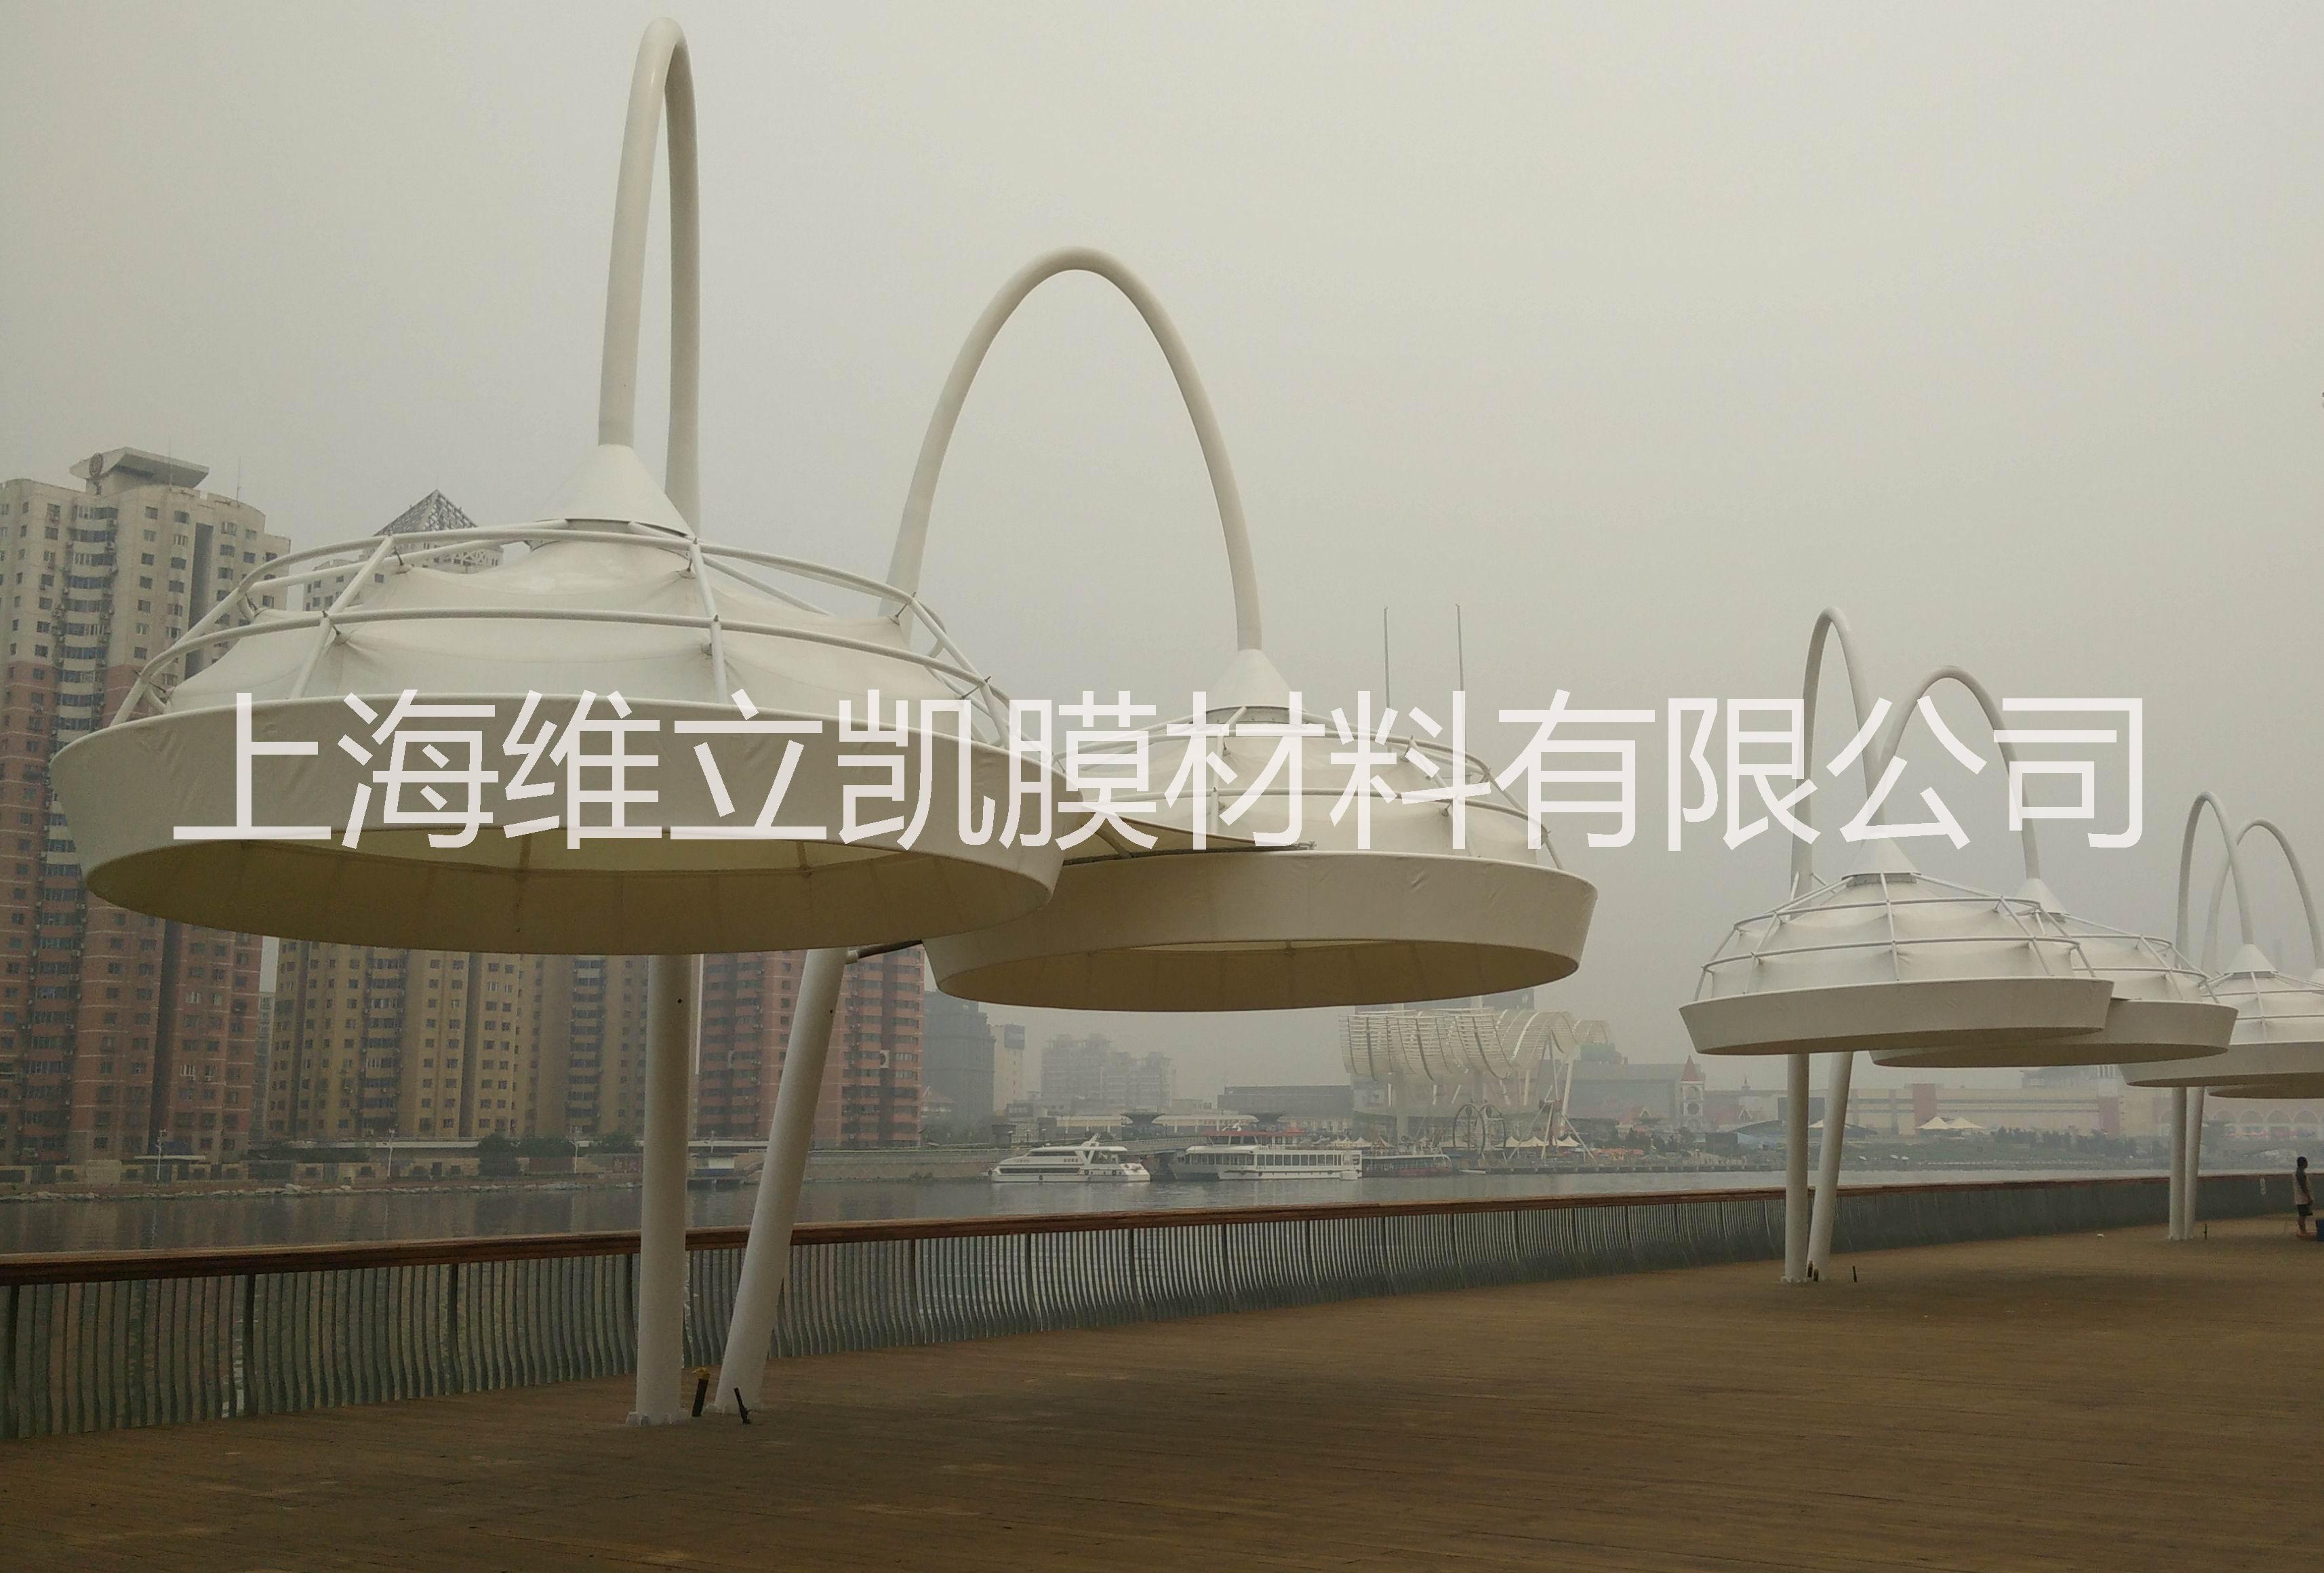 上海市膜结构景观厂家供应用于膜结构景观的PTFE膜材